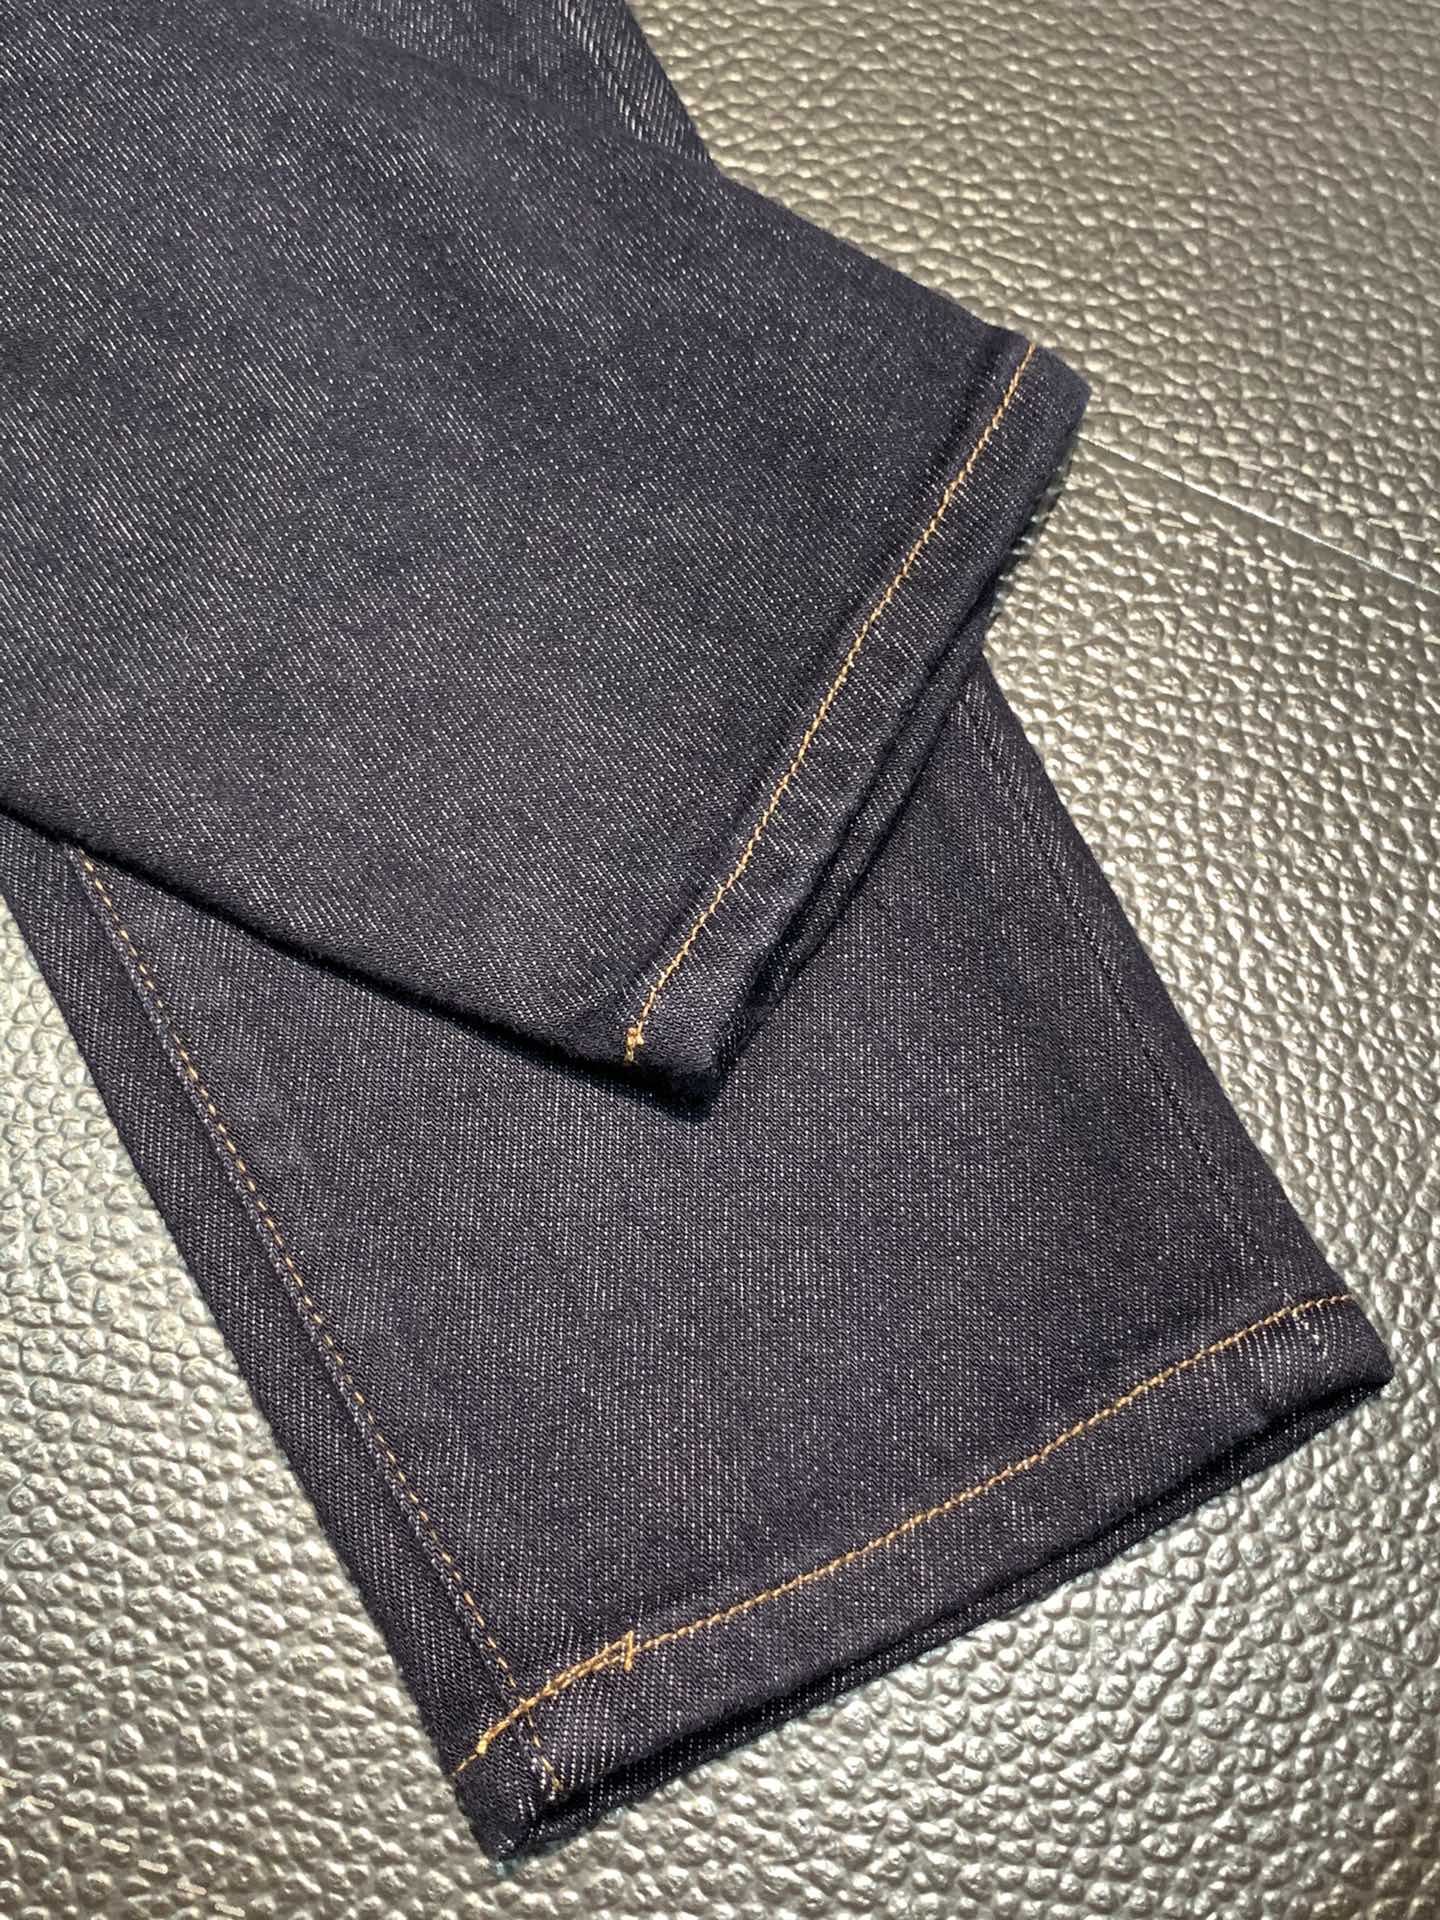 Loewe罗意威独家专供新款休闲牛仔裤高端版本专柜定制面料透气舒适度高细节无可挑剔品牌元素设计理念体现高